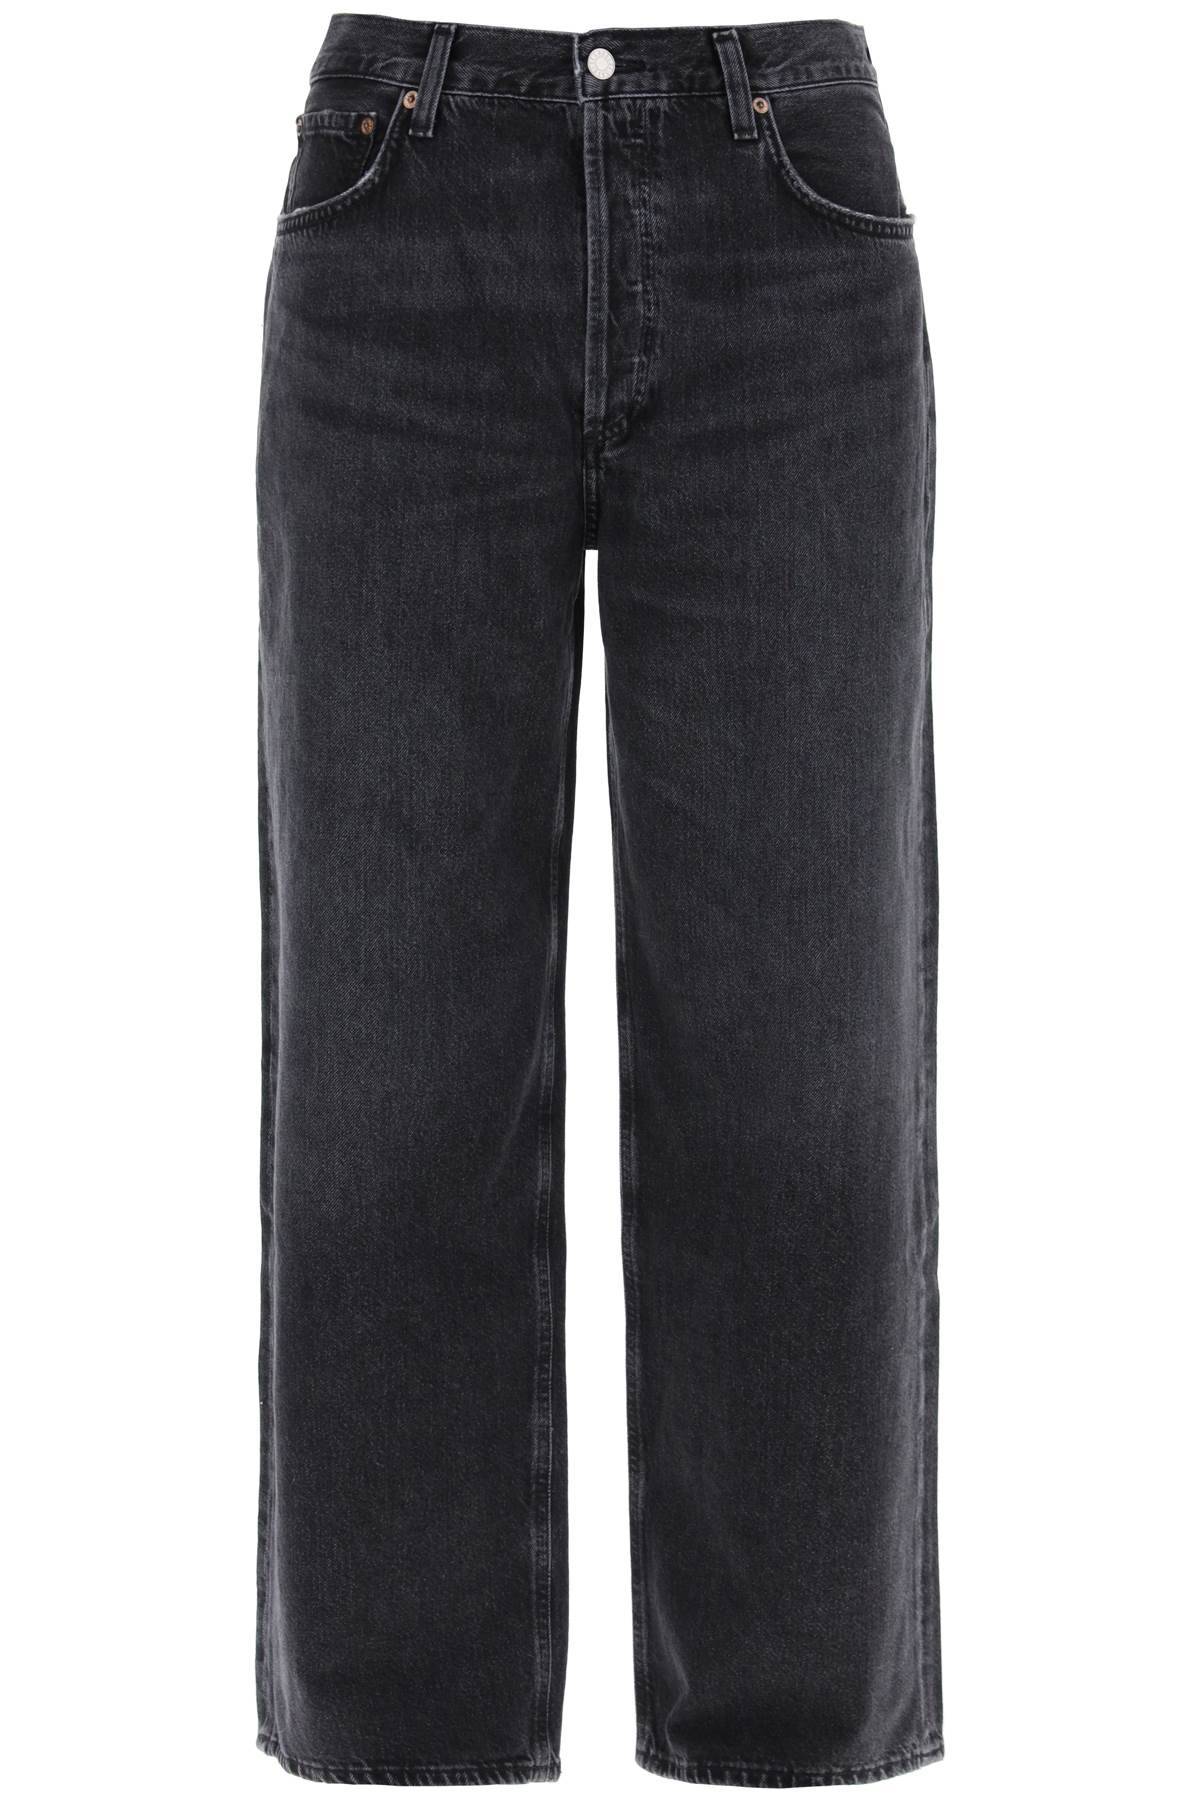 Shop Agolde Baggy Slung Jeans In Black,grey